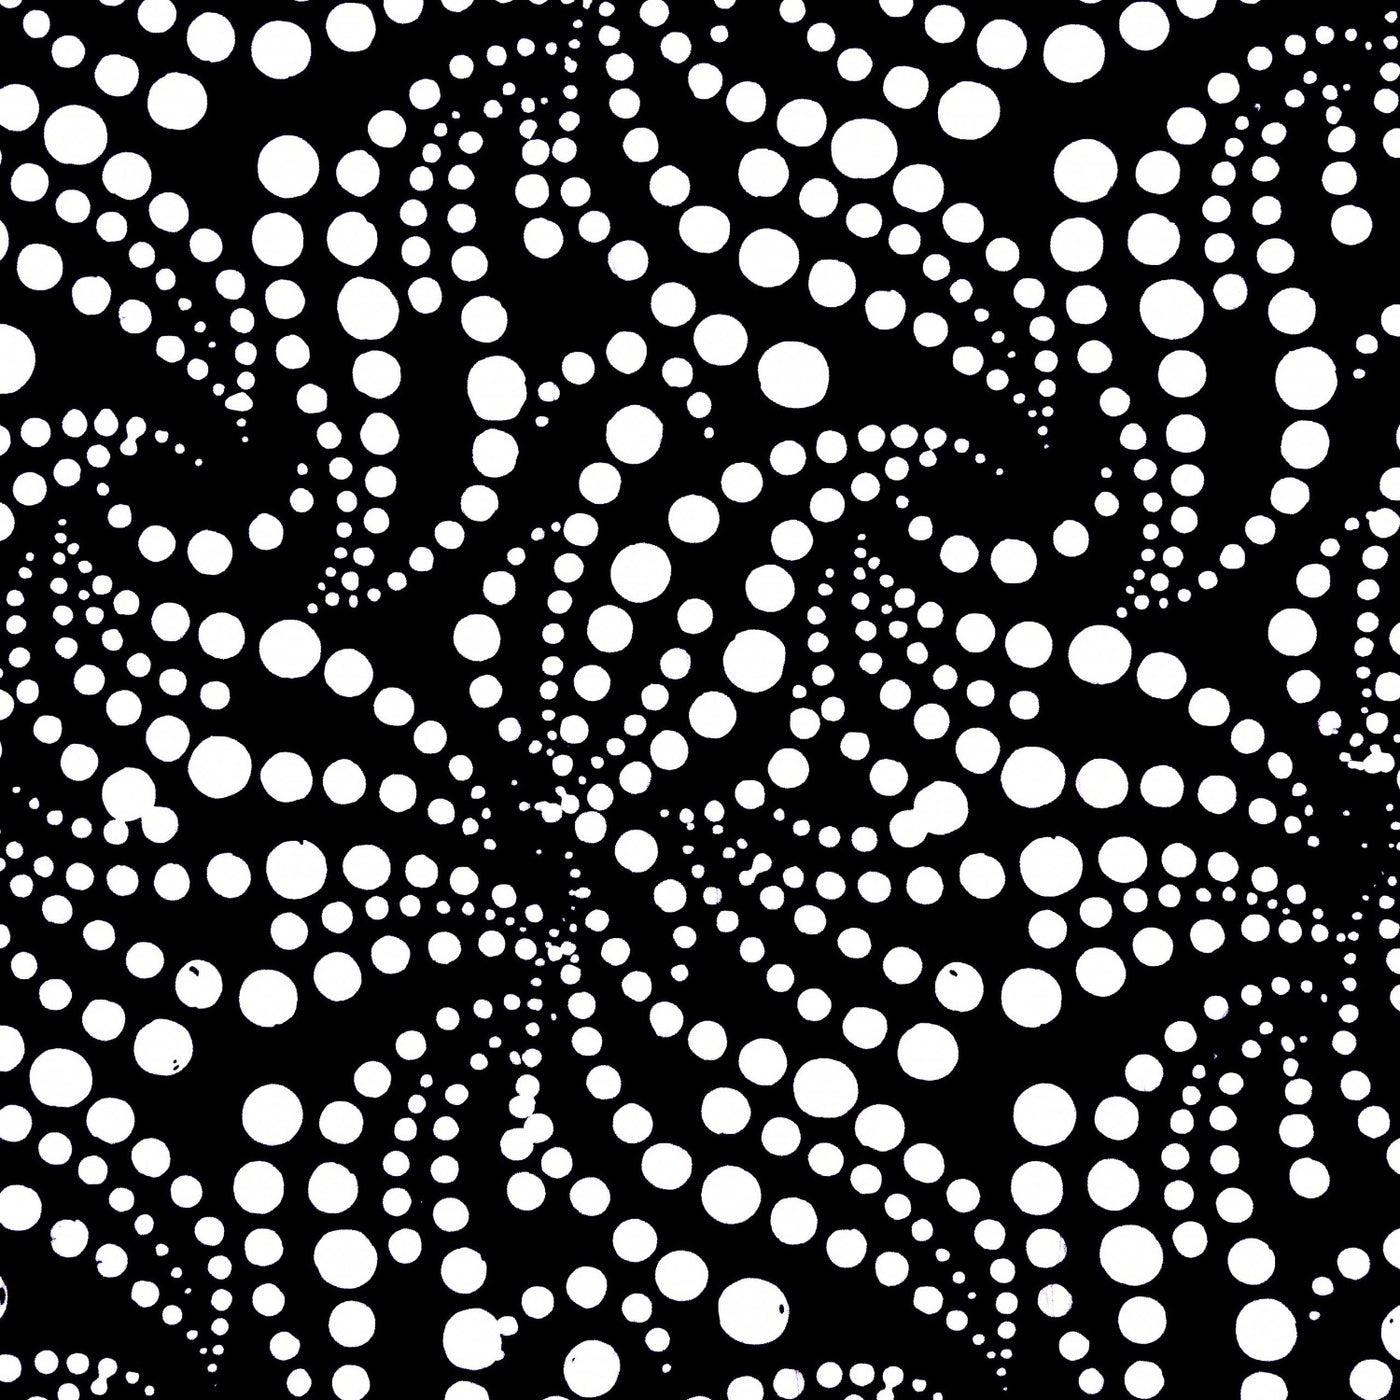 Batik by Mirah BK-3 10 Black & White